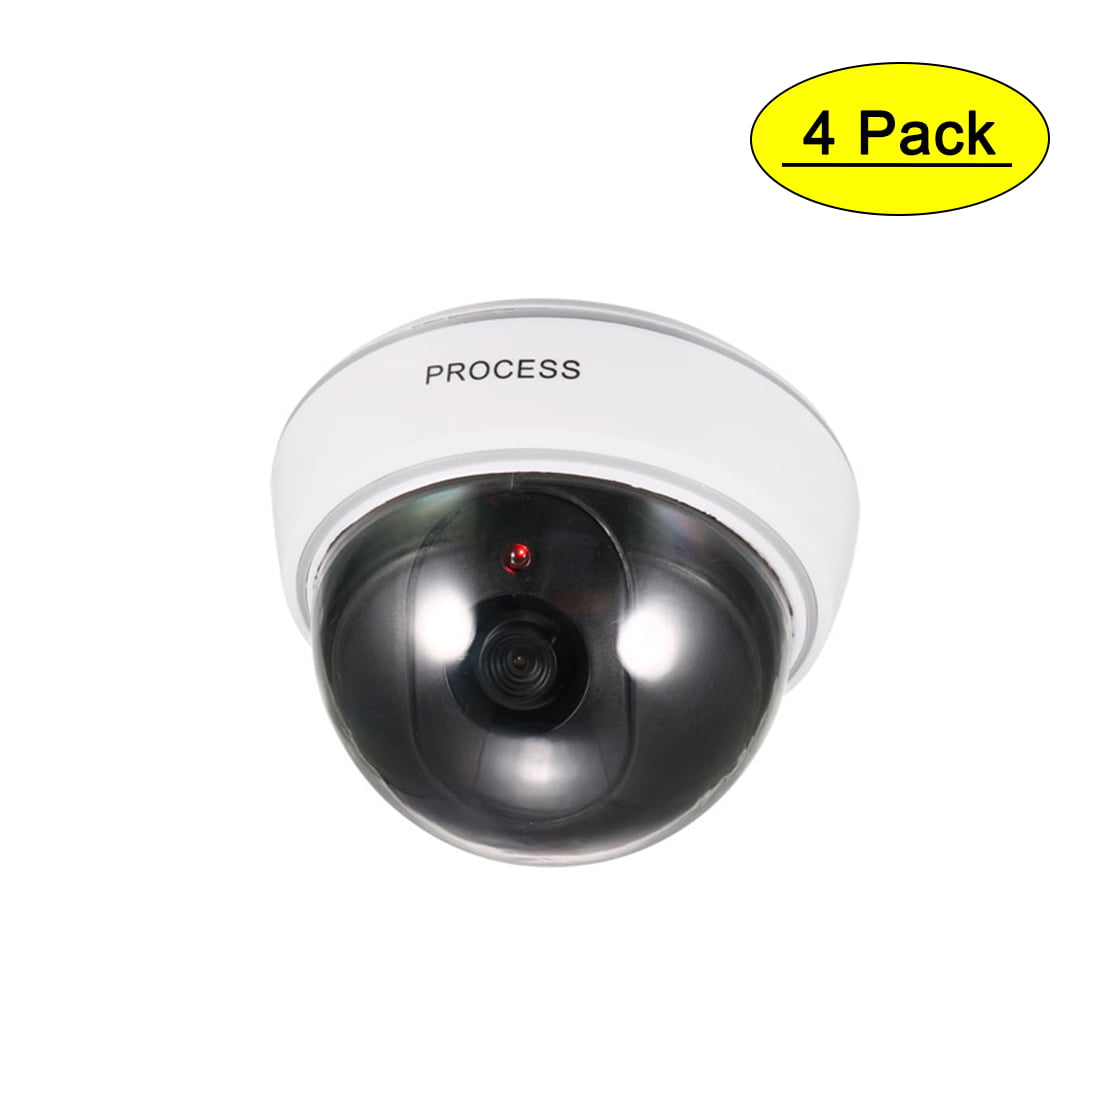 Brand New Security Fausse caméra de sécurité Look clignotant DEL Light CCTV Surveillance 